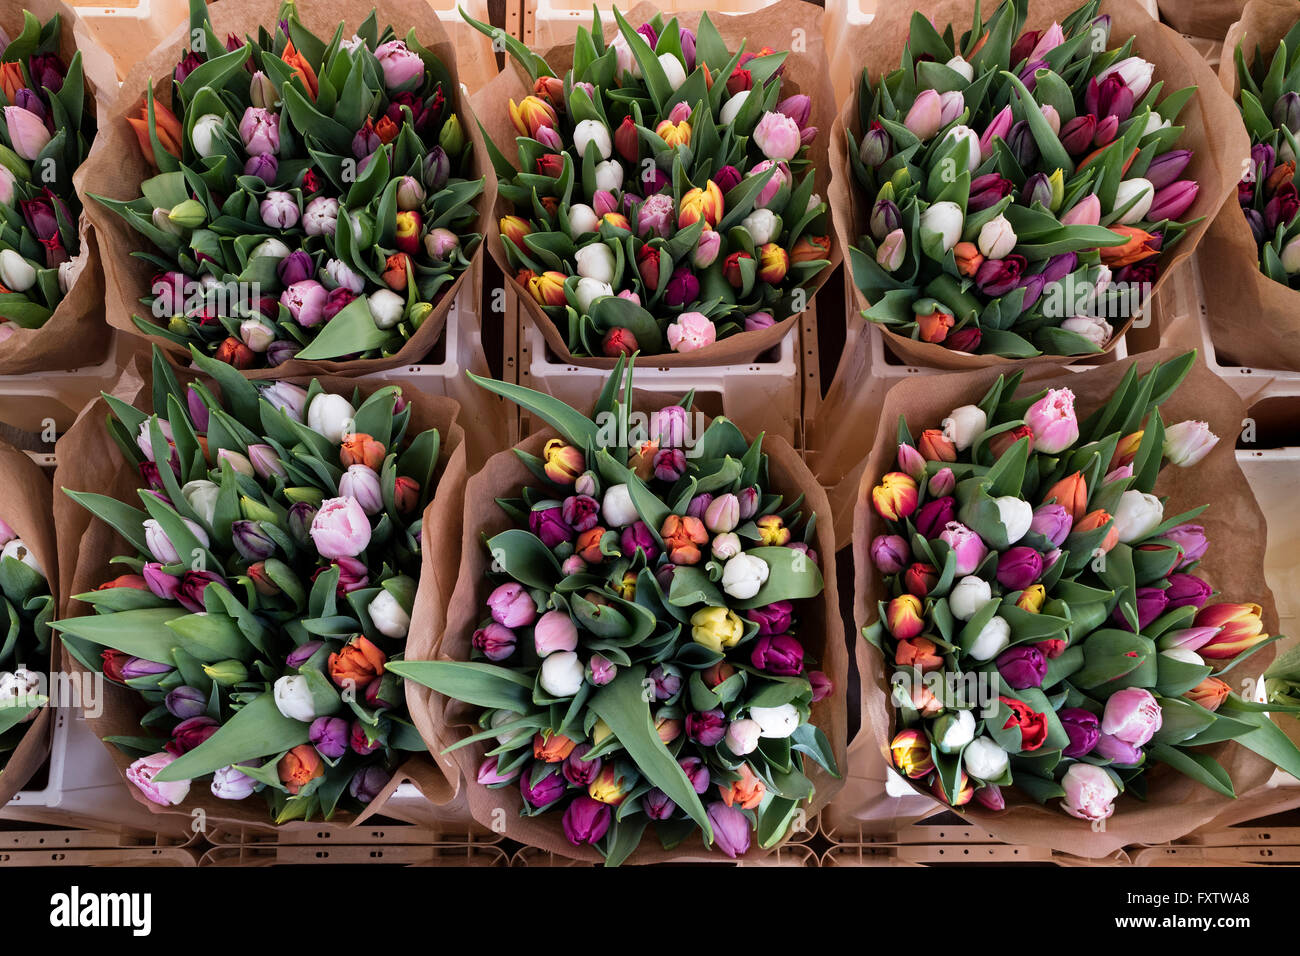 Freschi mazzi di tulipani olandesi sul mercato in Olanda Foto Stock